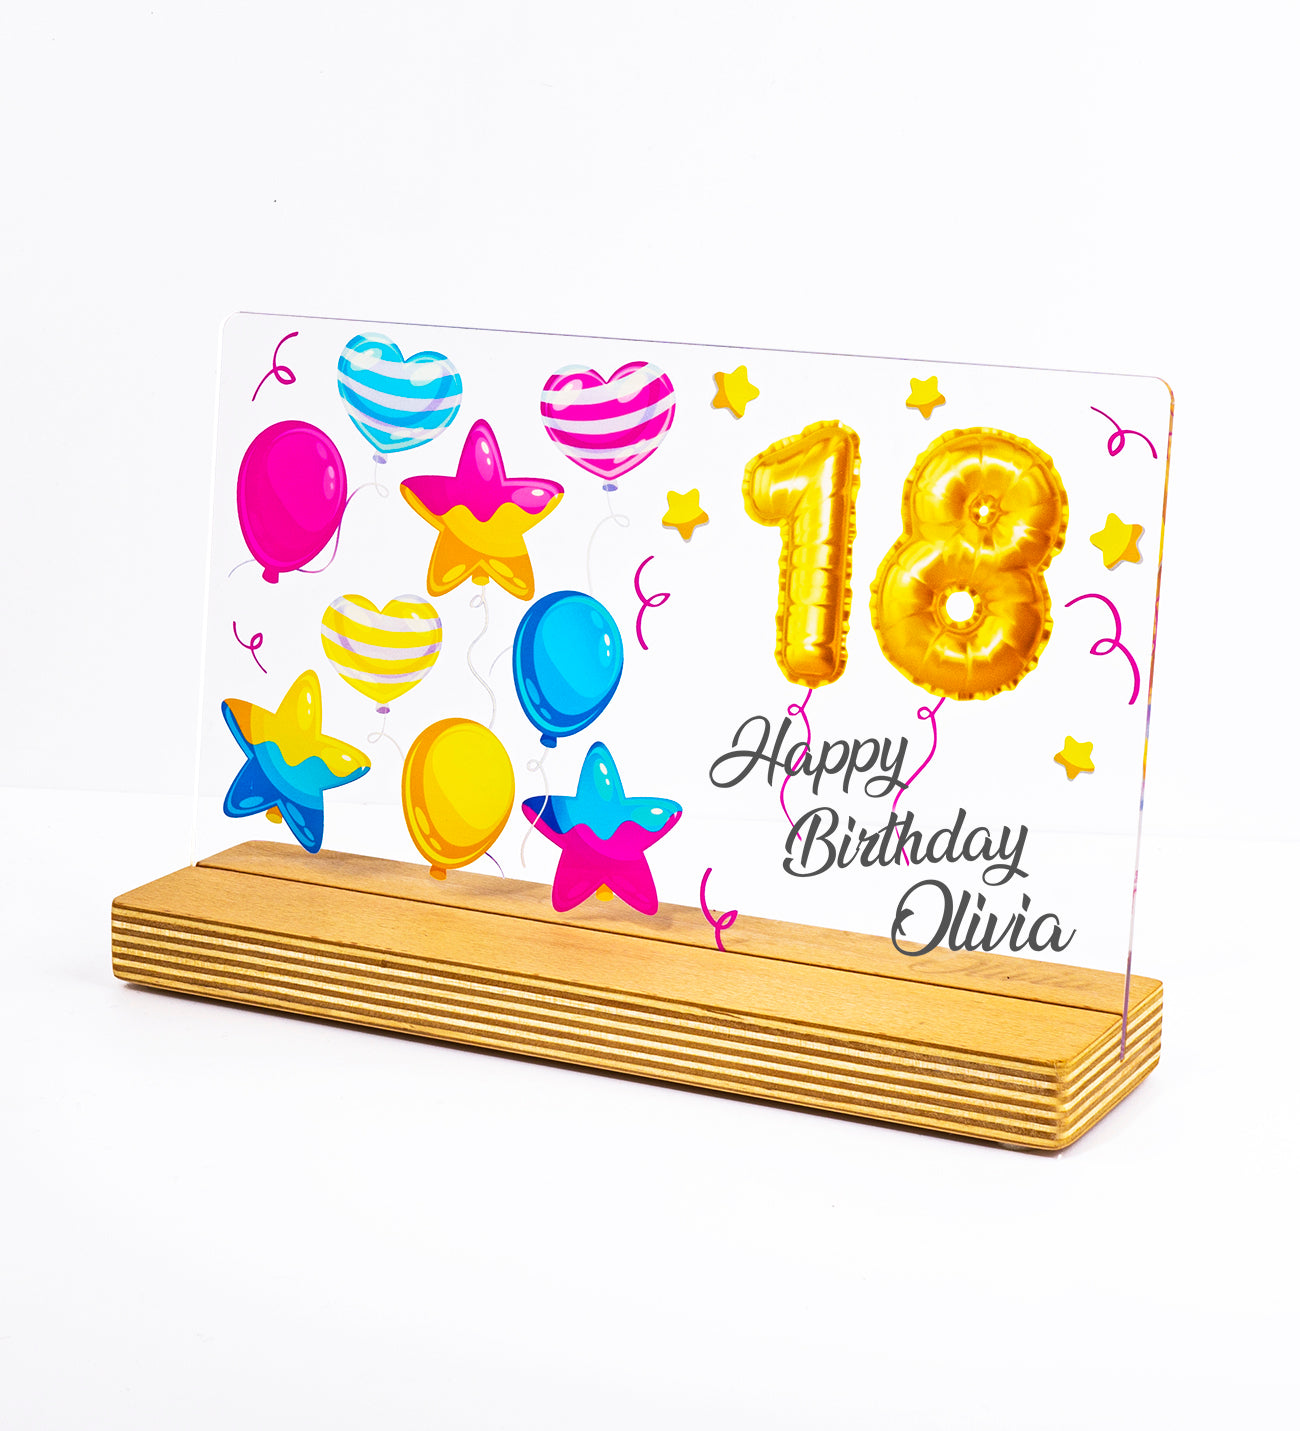 Personalisiertes Geschenk zum Geburtstag mit hochwertigem UV-Druck Holzaufsteller & Geschenkbox